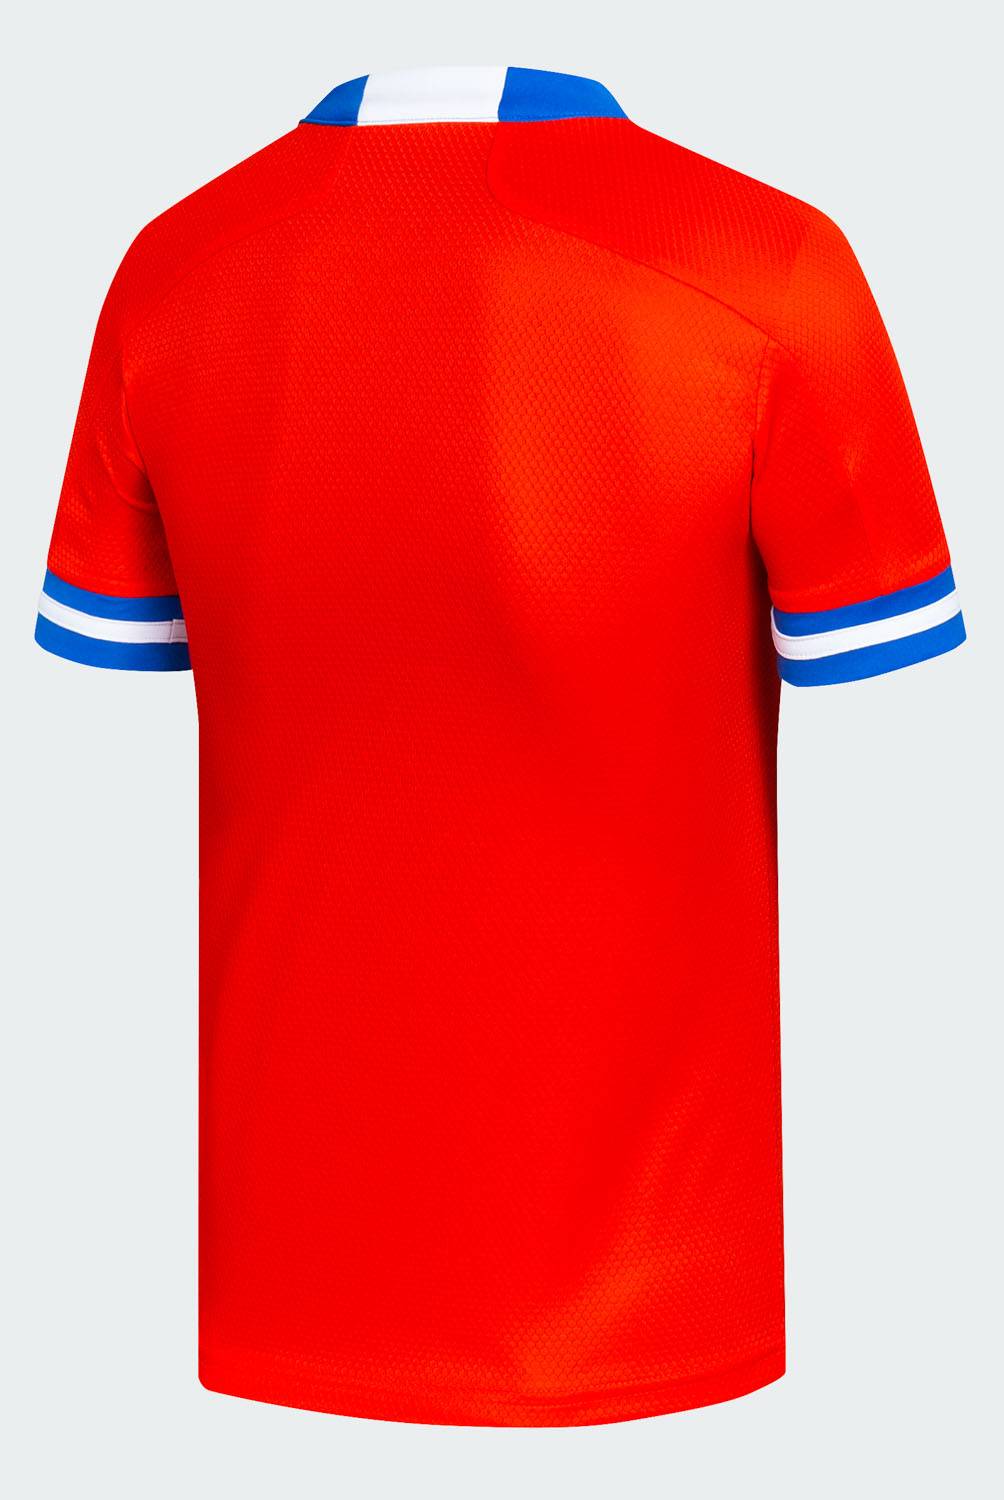 Adidas - Adidas Camiseta de Fútbol Selección Chilena Niño